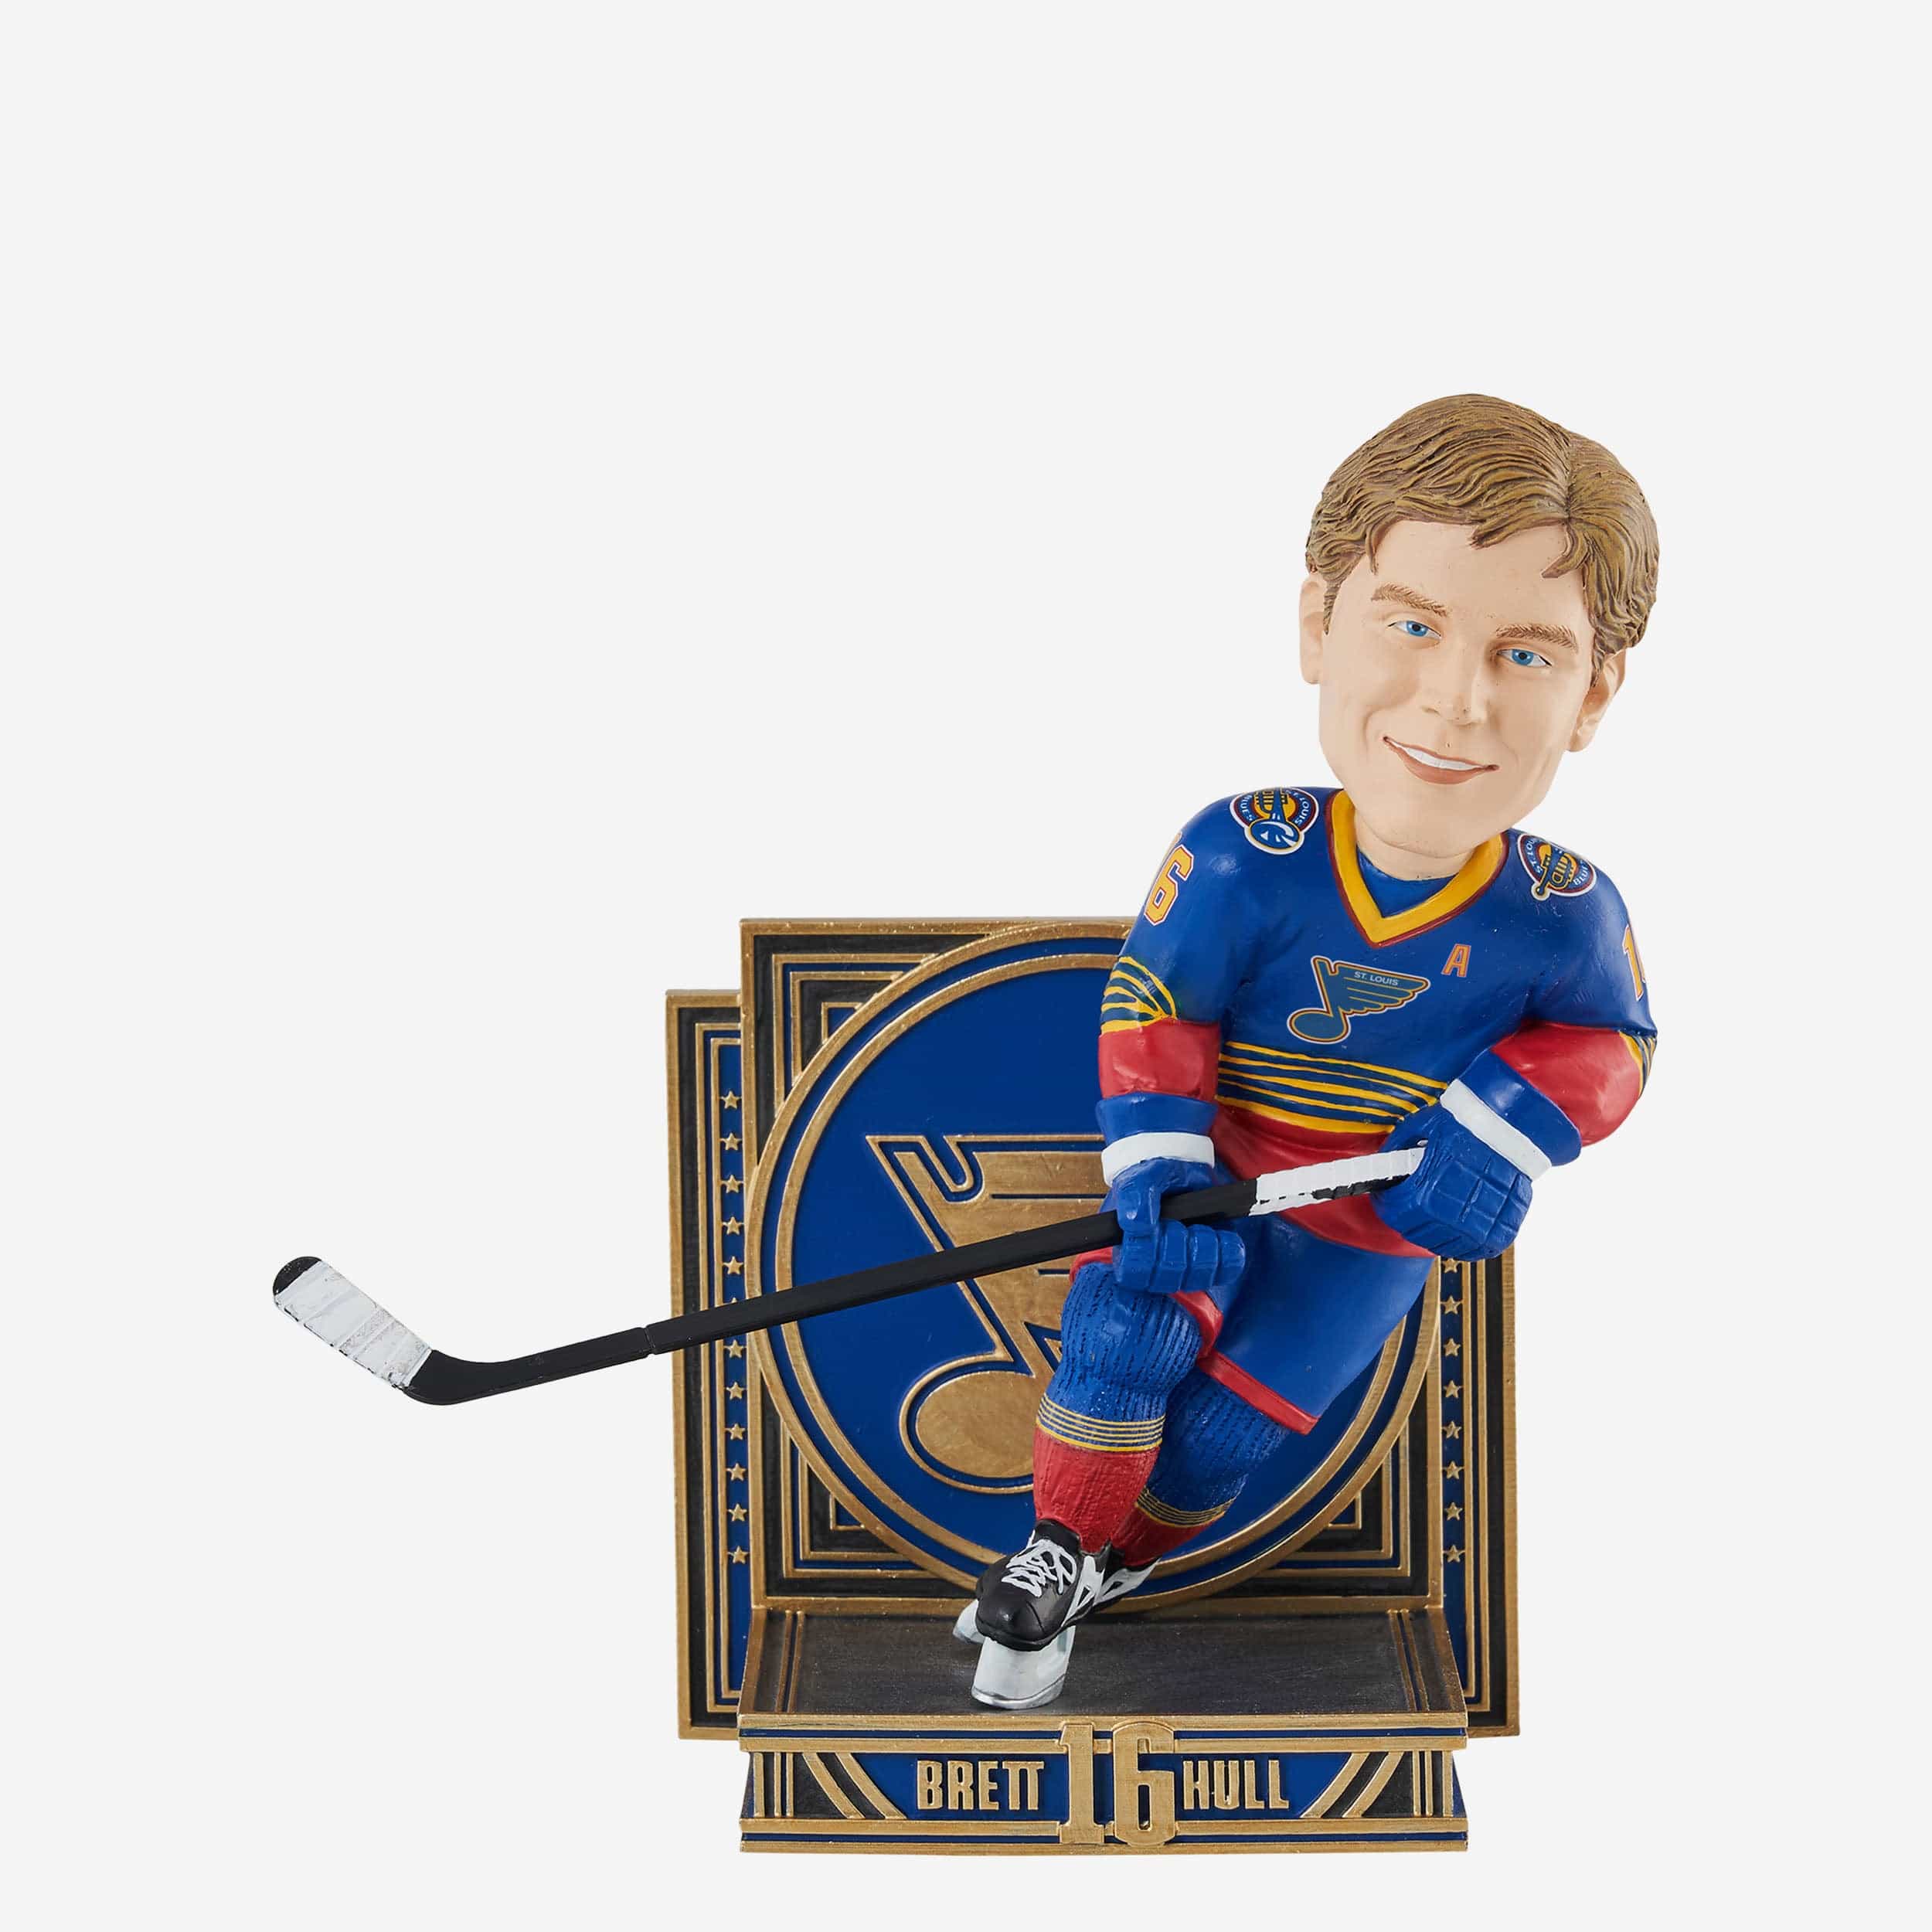 Brett Hull St Louis Blues Career Retrospective Bobblehead Officially Licensed by NHL